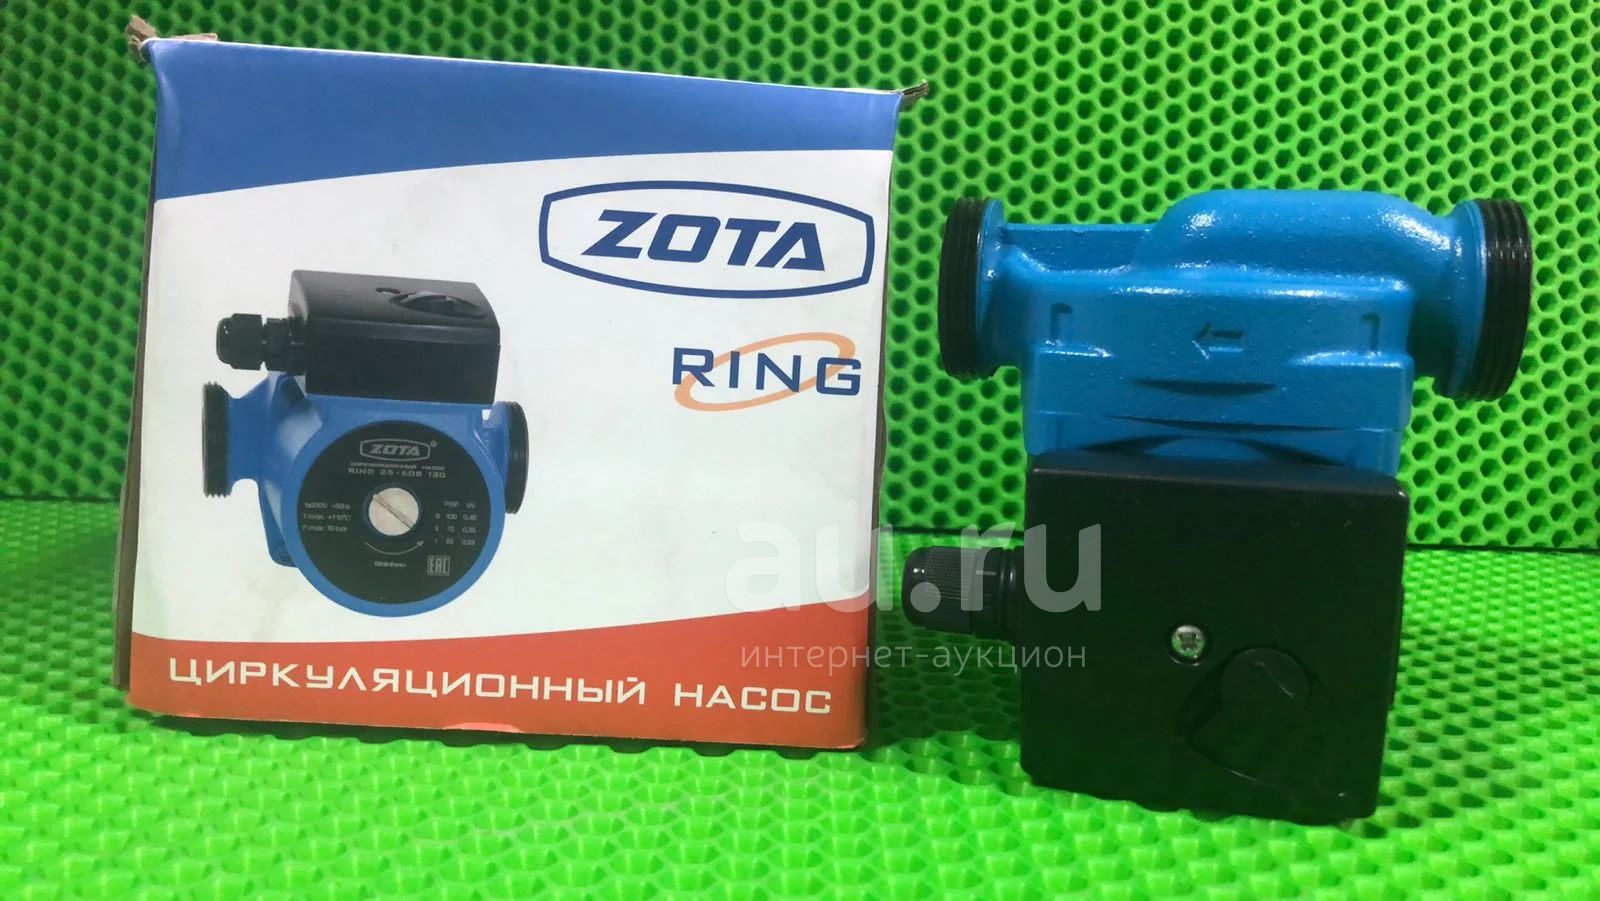  циркуляционный Zota Ring 25-70S 130/новый (Б5061С) —  в .